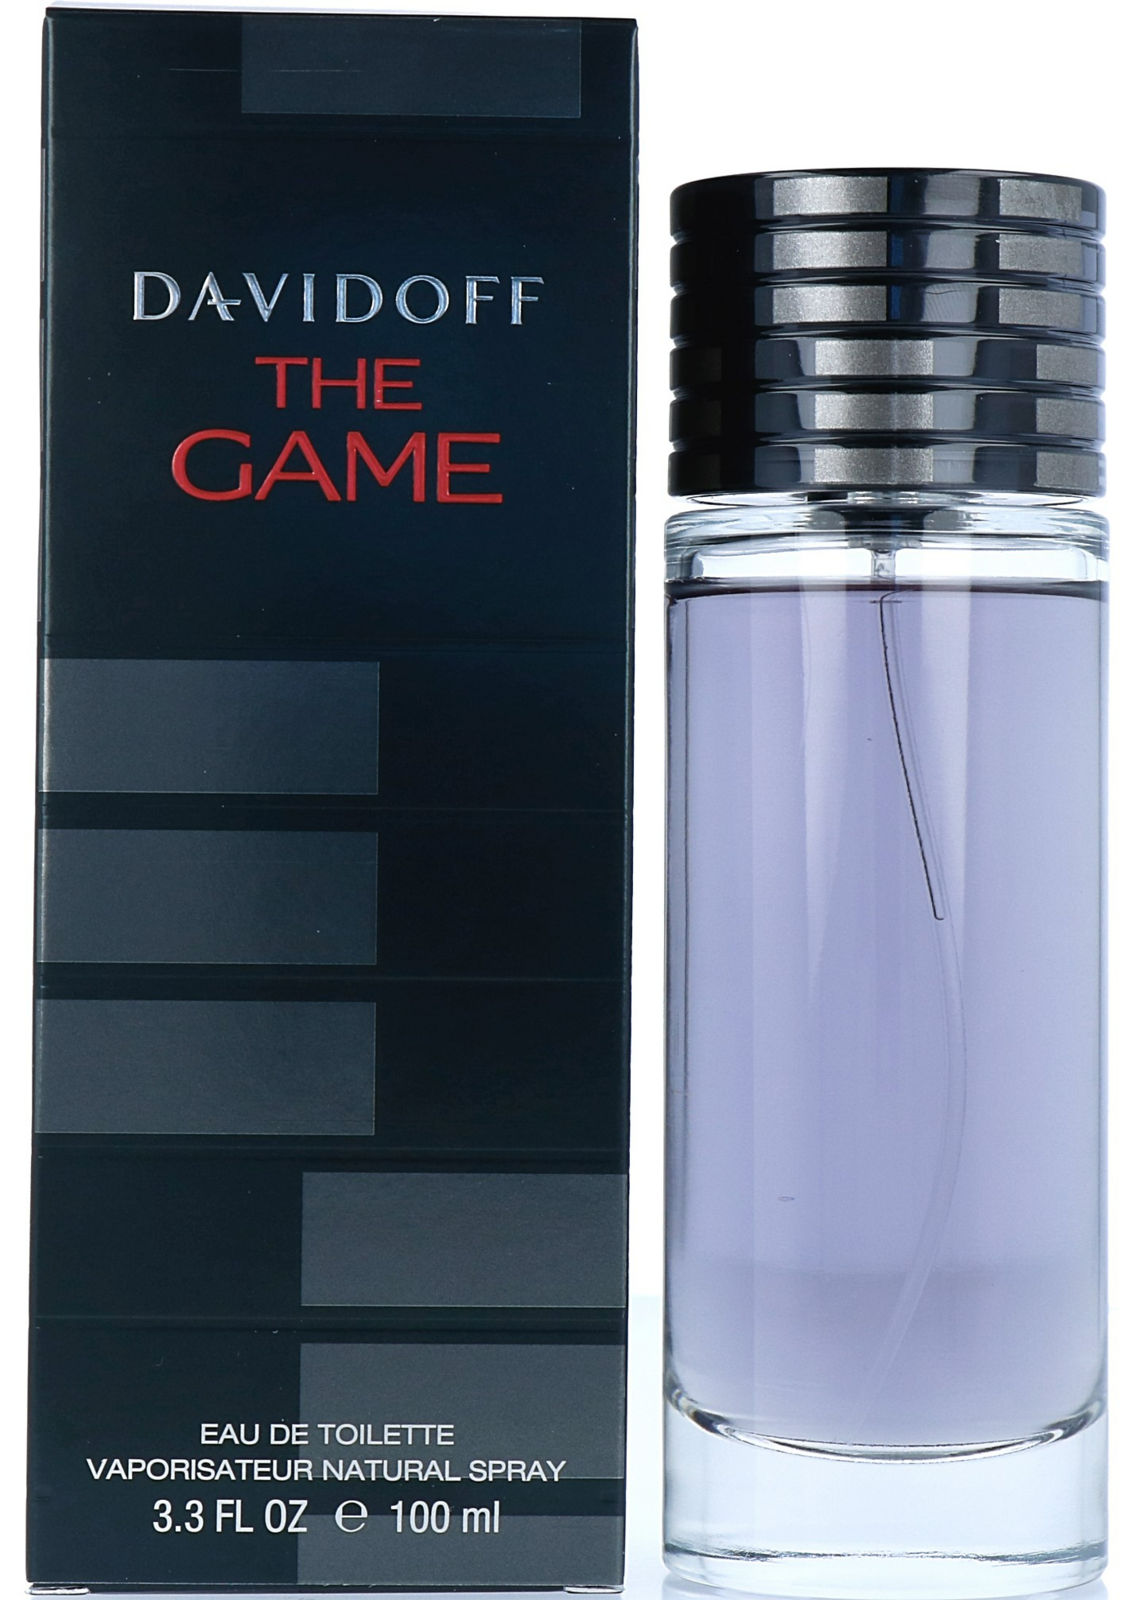 Davidoff The Game eau de toilette - 100 ml